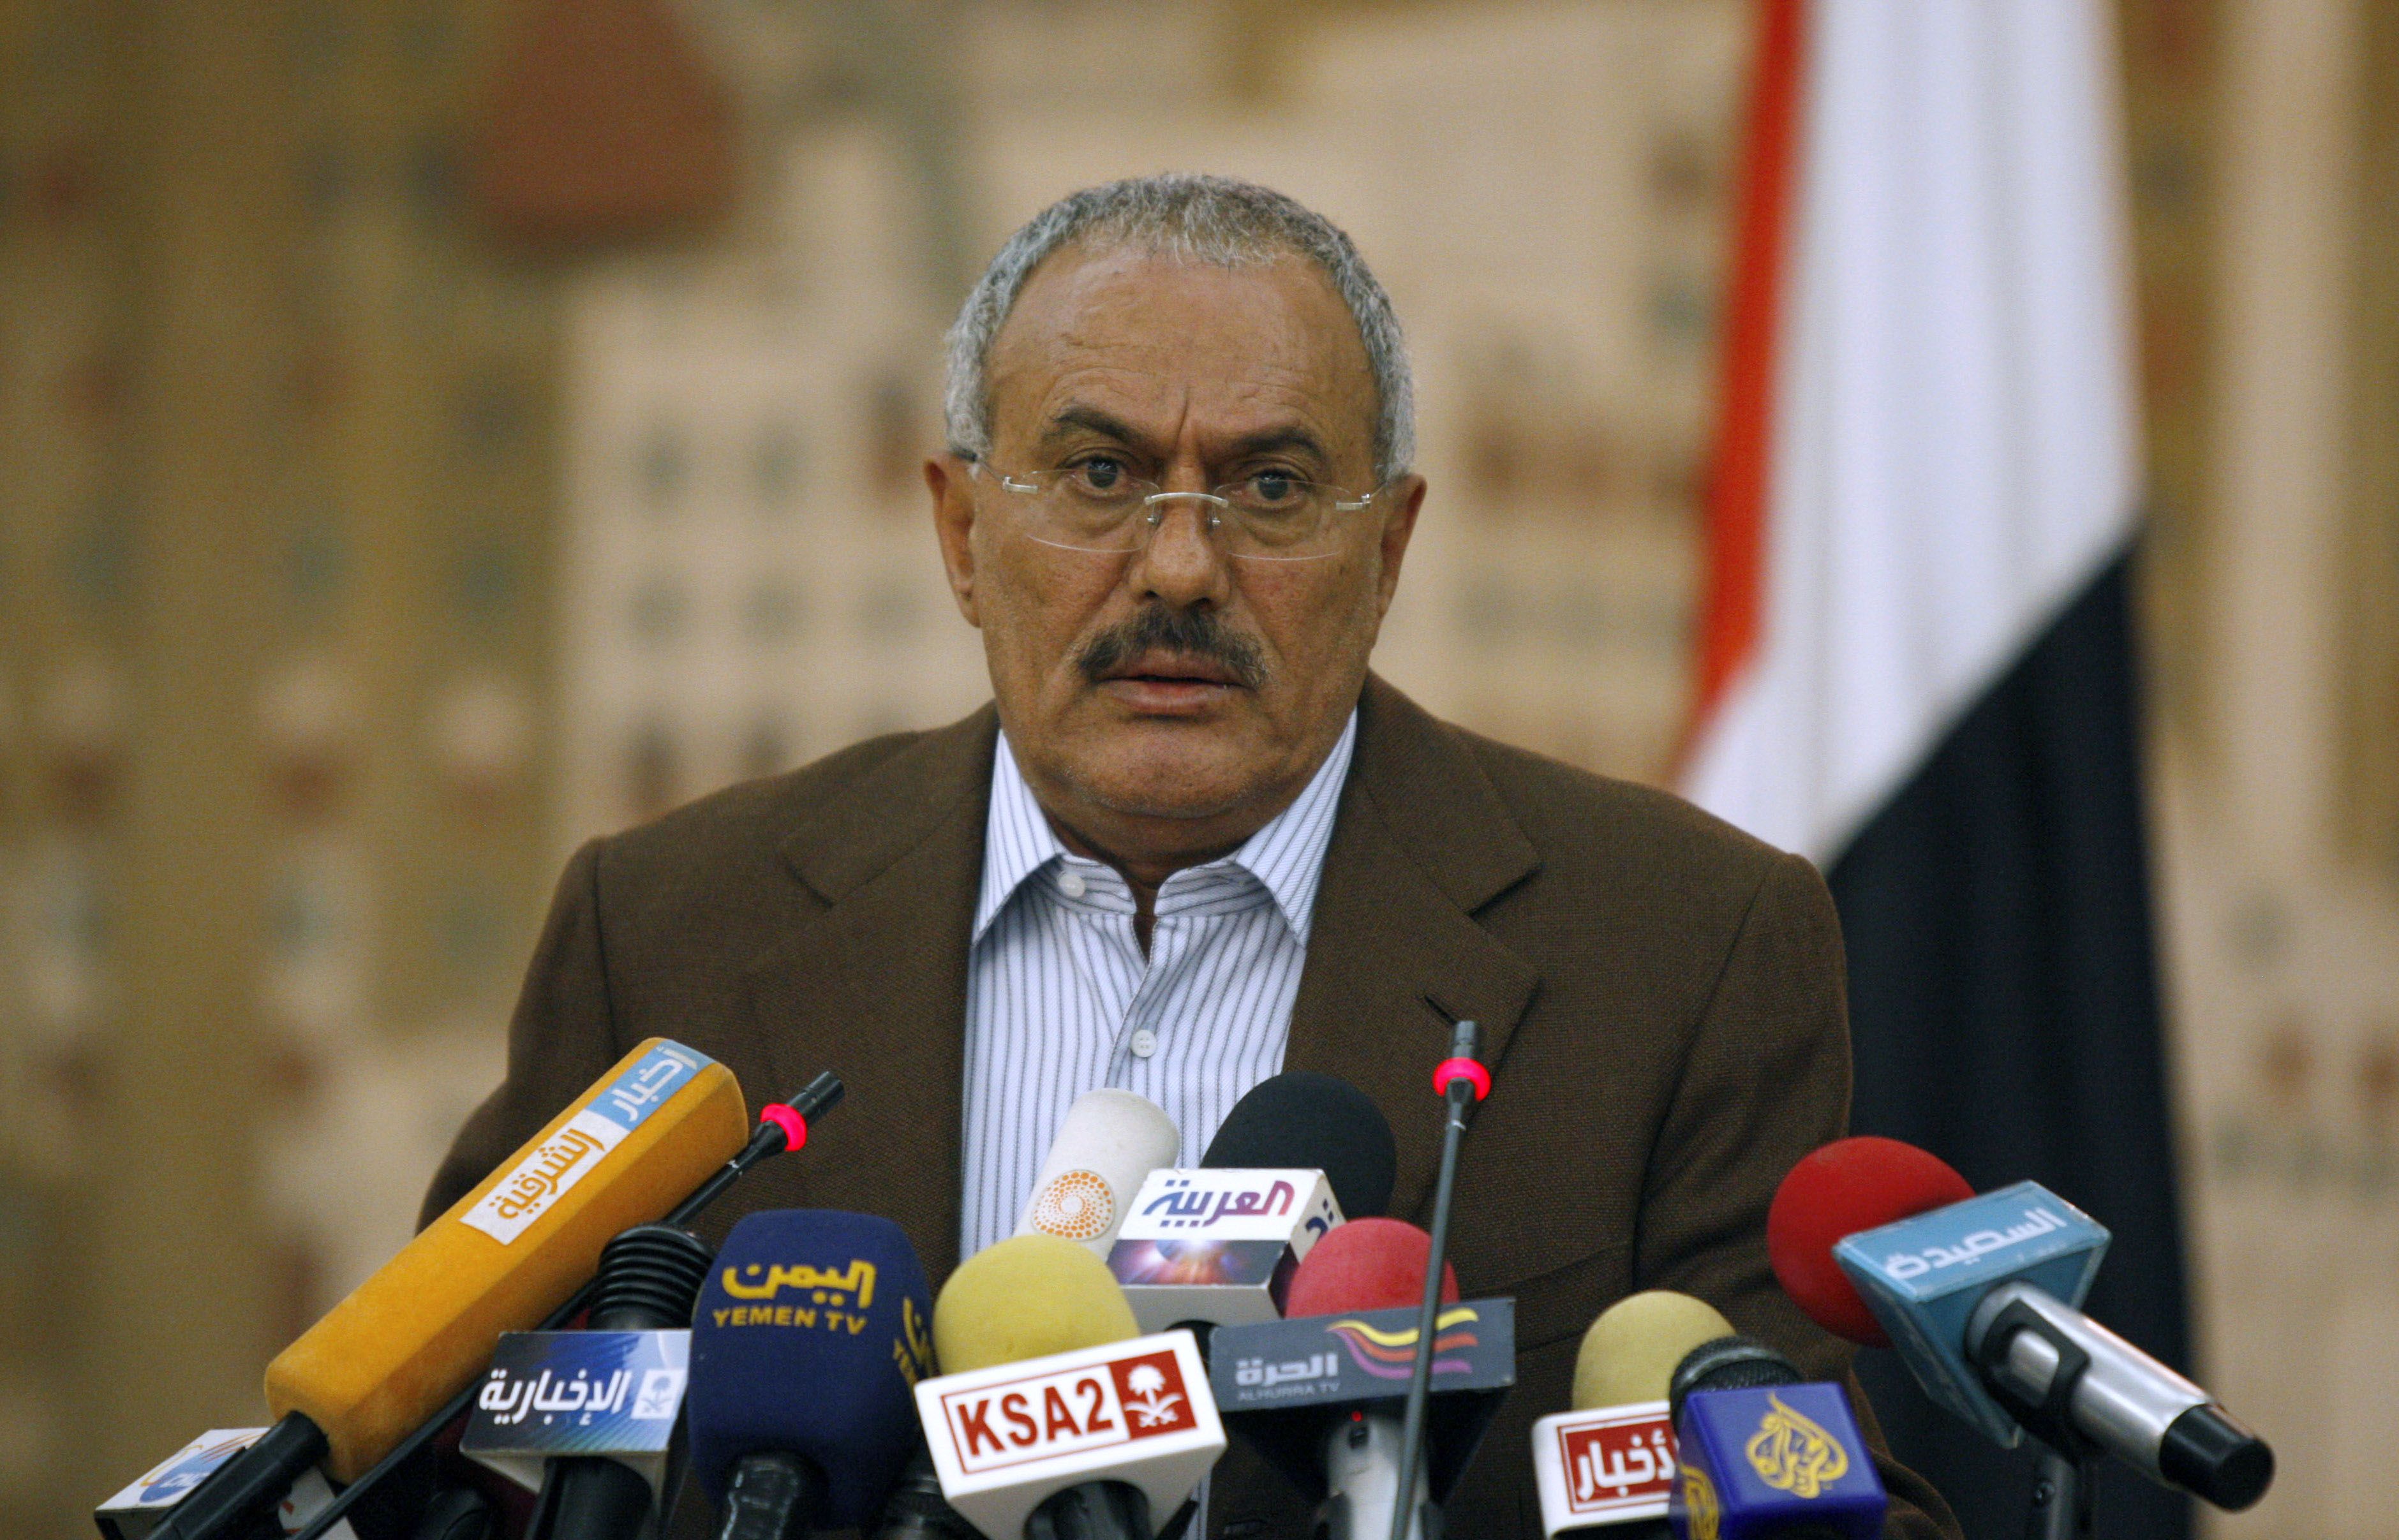 Demonstration, Jemen, President, Uppror, Ali Abdullah Saleh, Revolution, Avgår, USA